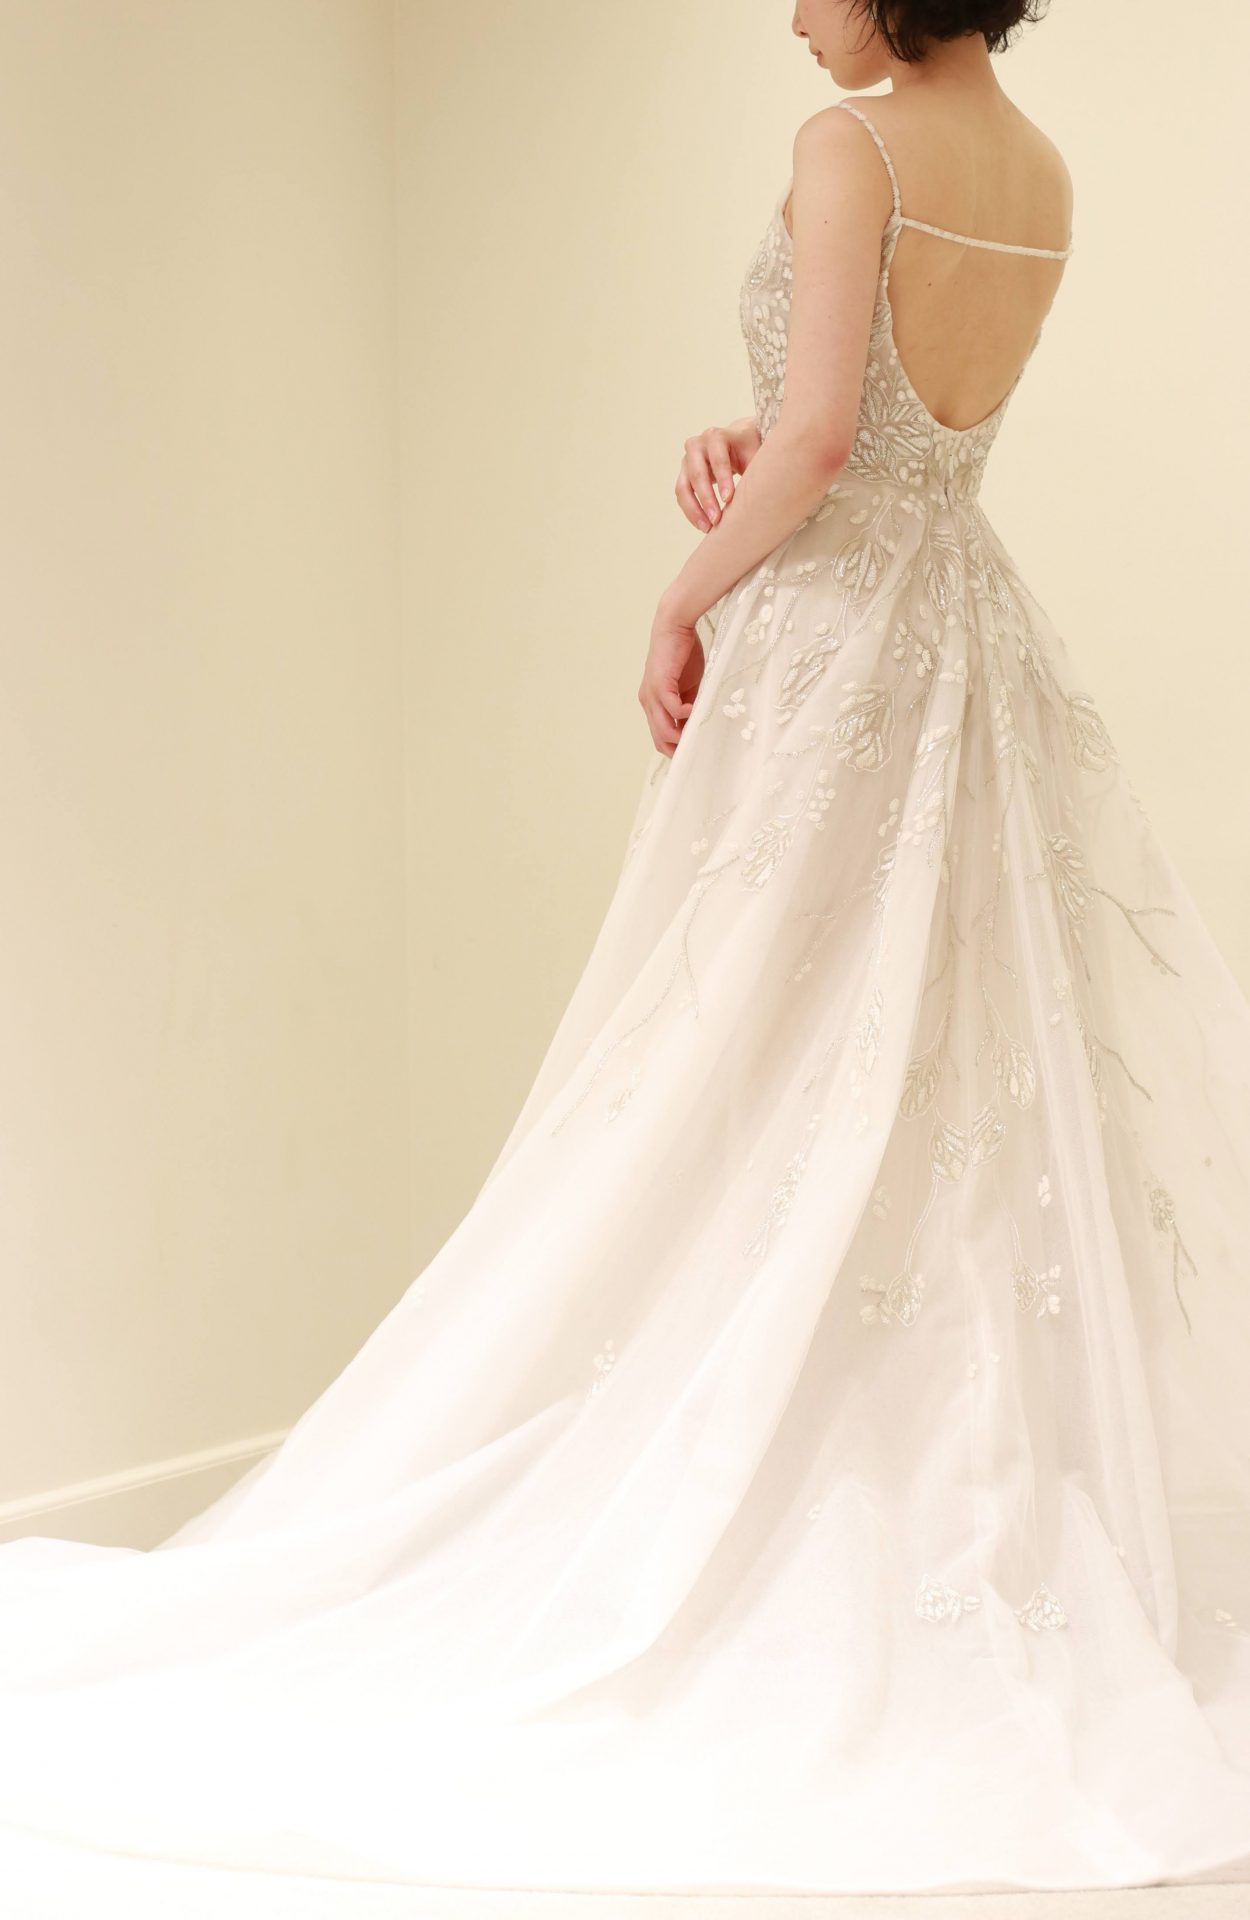 キリスト教式の結婚式をお選びになった花嫁様にお勧めしたいリームアクラのウェディングドレスは、ビジューのキラキラとした輝きと背中の華奢さを引き立てるストラップデザインが魅力的なバックコンシャスなドレスです